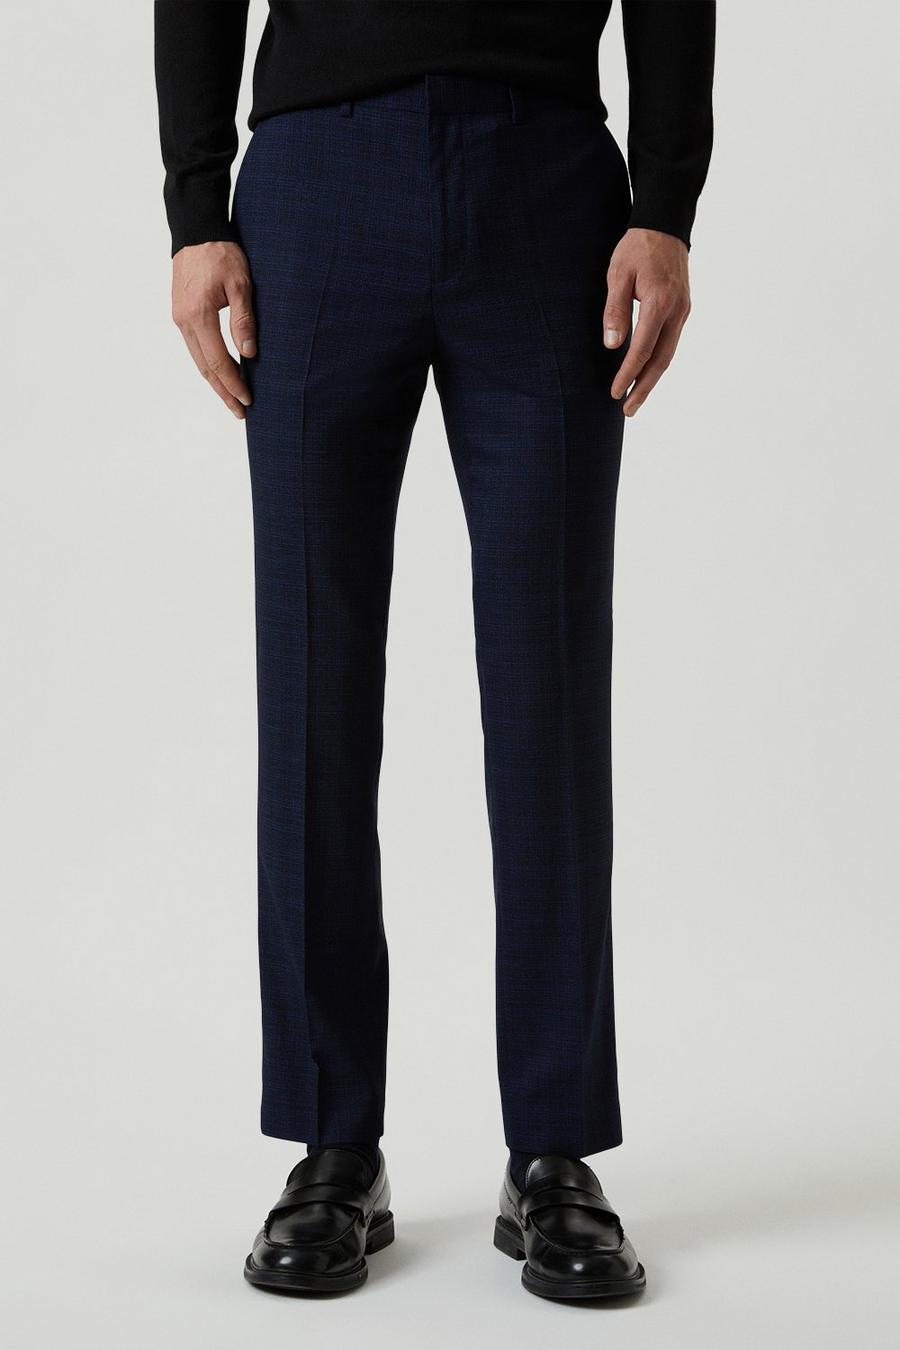 Slim Fit Navy Tonal Grindle Suit Trousers